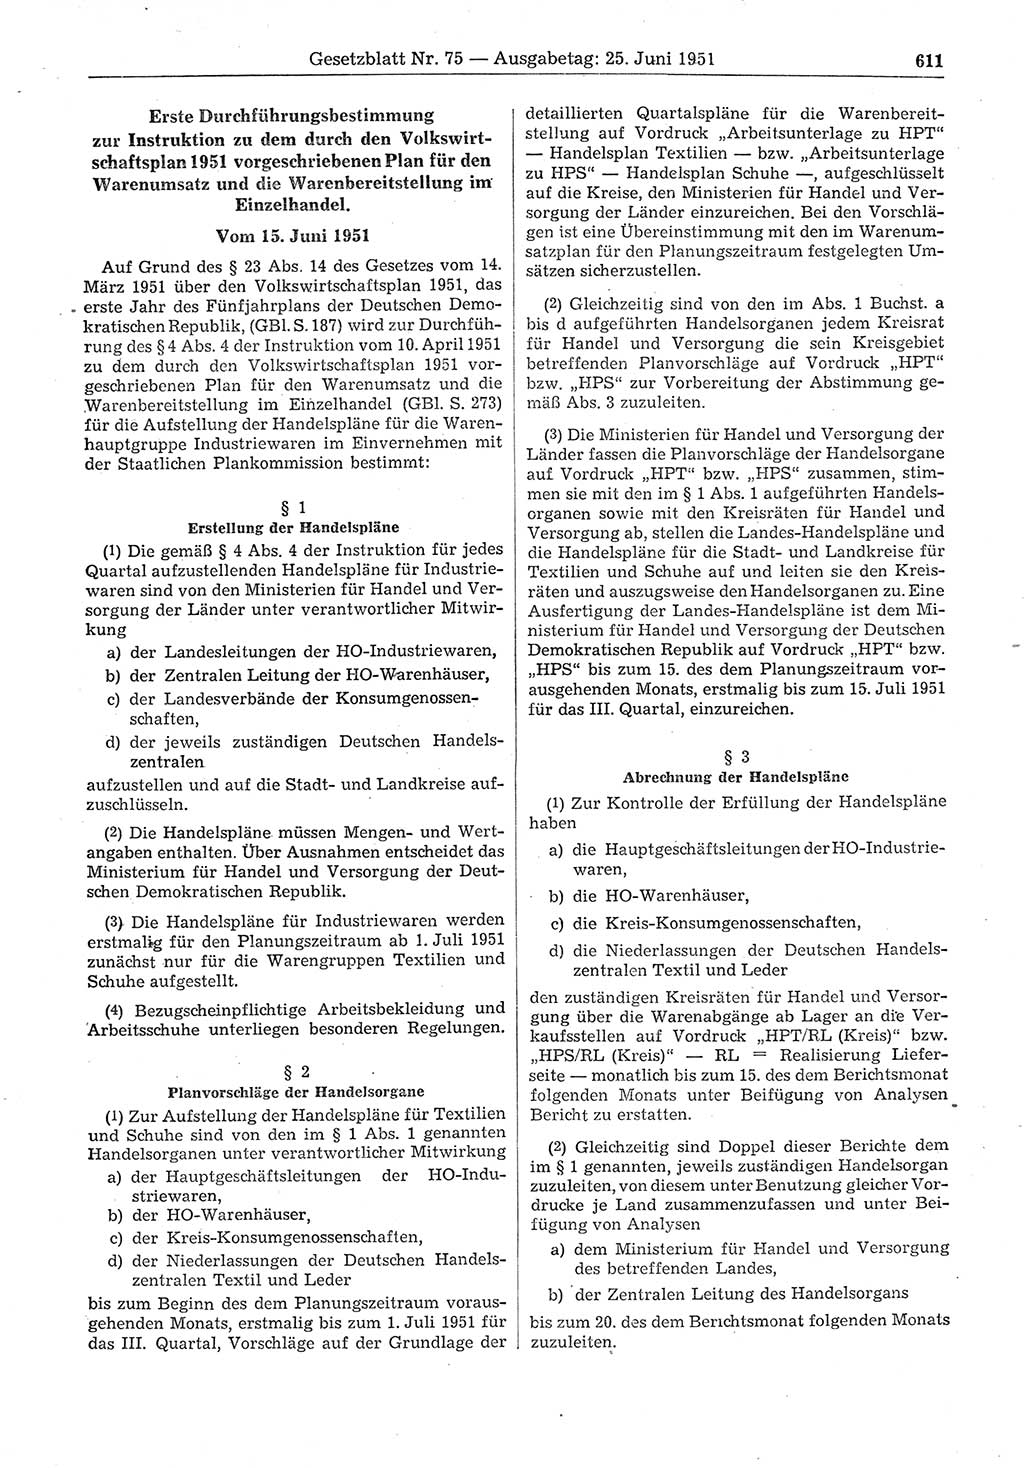 Gesetzblatt (GBl.) der Deutschen Demokratischen Republik (DDR) 1951, Seite 611 (GBl. DDR 1951, S. 611)